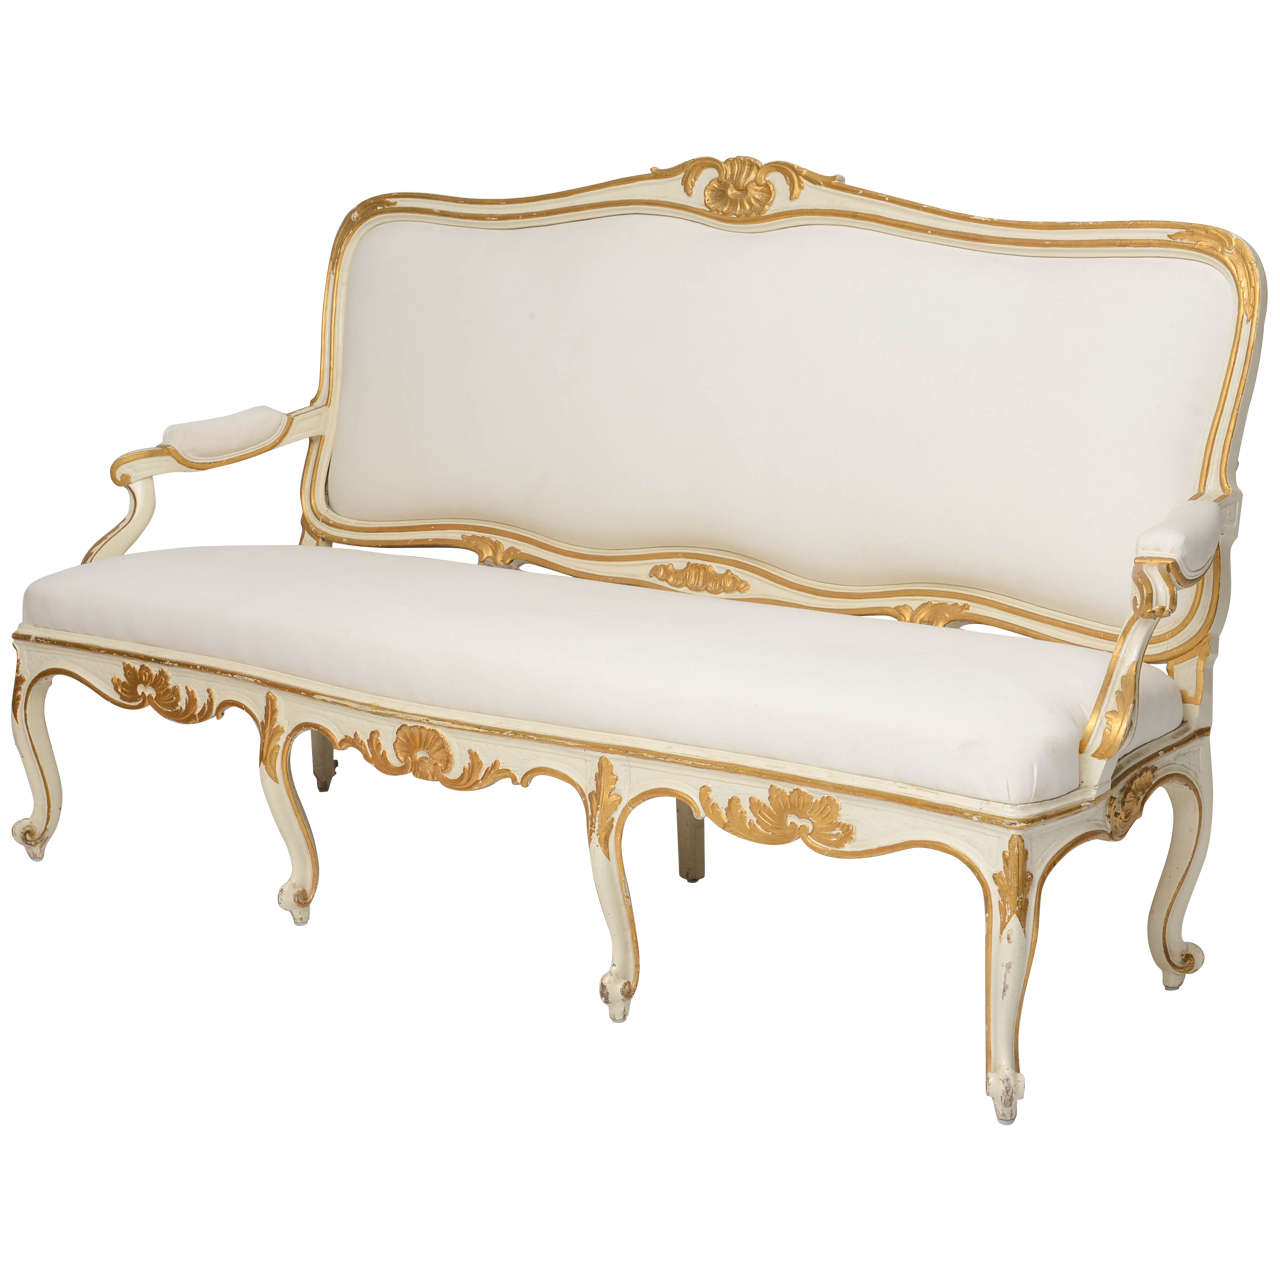 Swedish Upholstered Settee, Original Gilt, circa 1840 For Sale